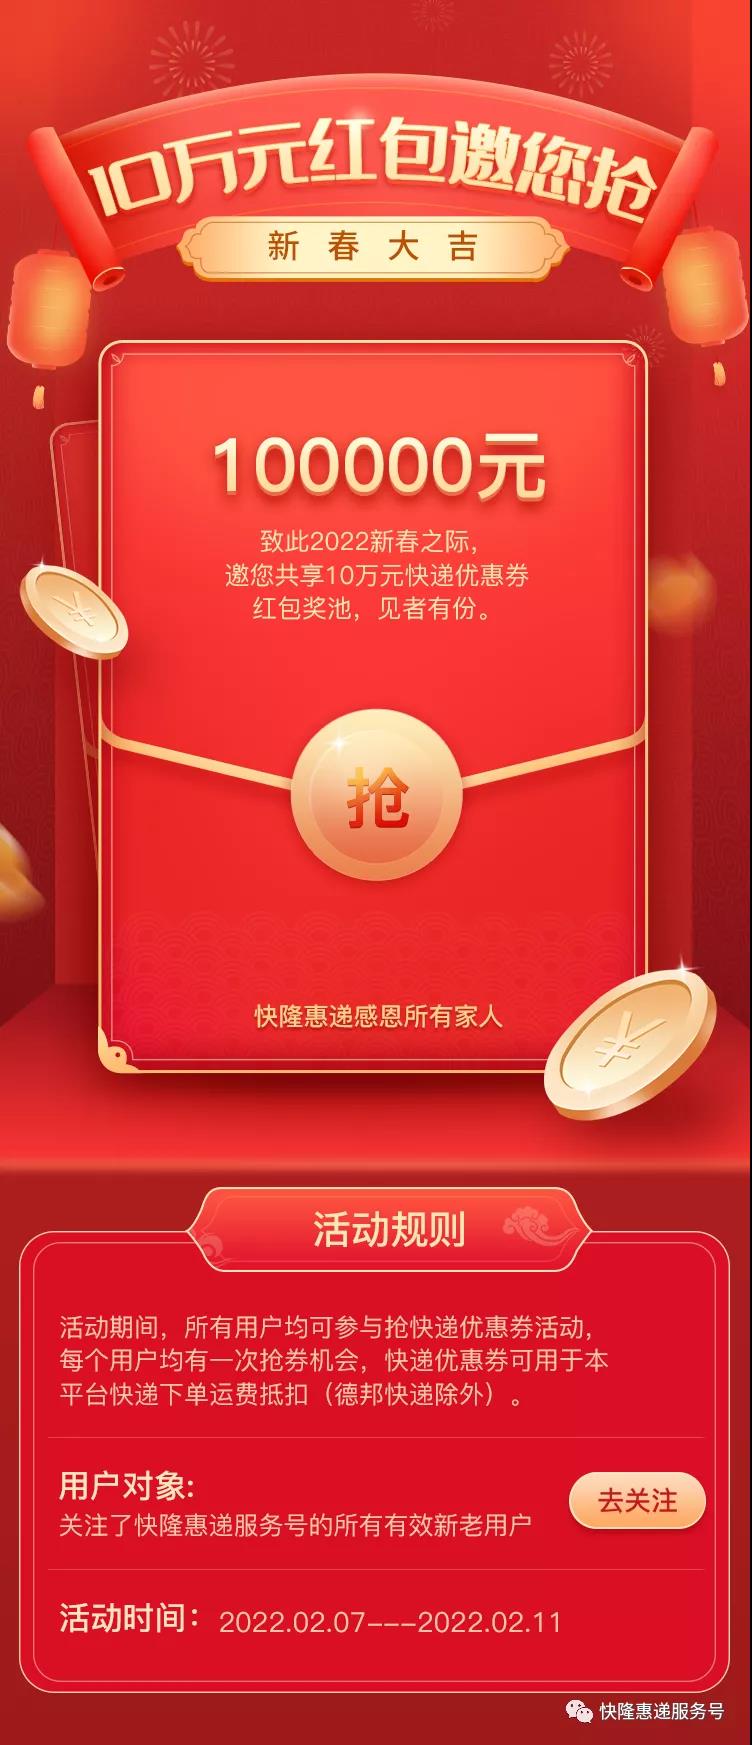 快隆惠递恭祝大家春节快乐，邀您共享10万元开门红包！